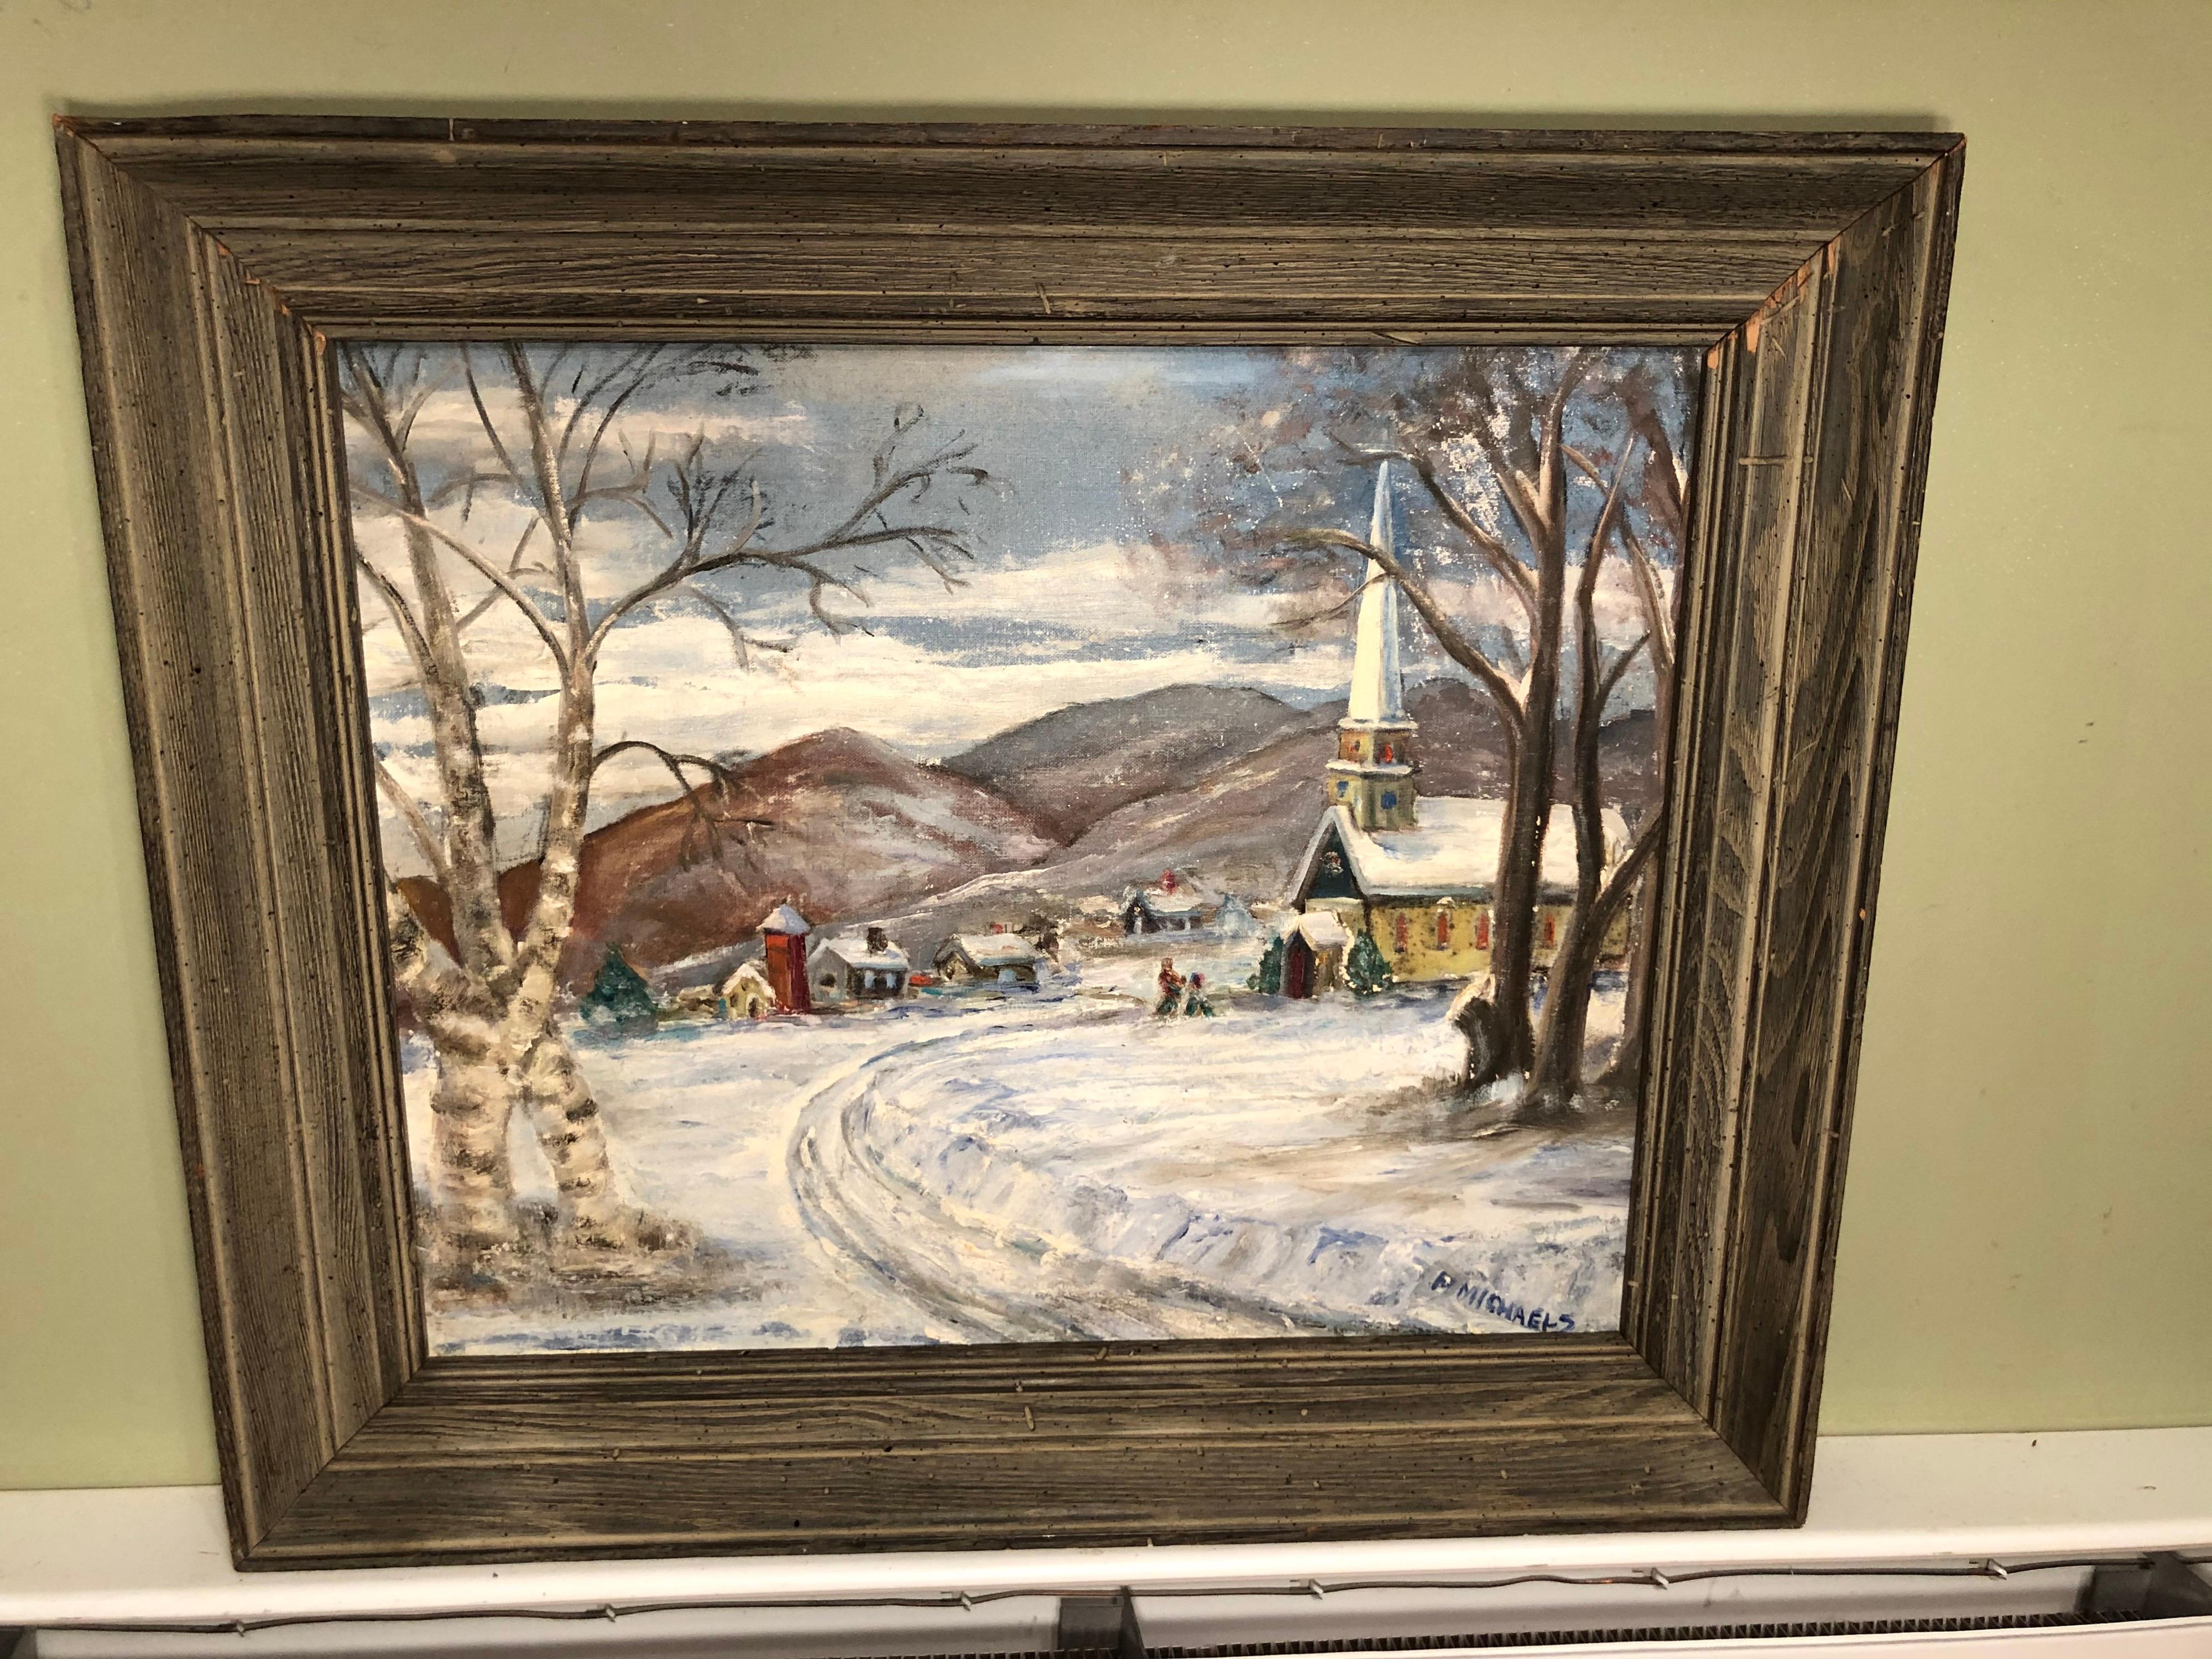 Scène d'église d'hiver signée par F. Michaels. Belle composition de la scène hivernale de la Nouvelle-Angleterre. Encadré dans un cadre en bois massif. Signé en bas à droite.